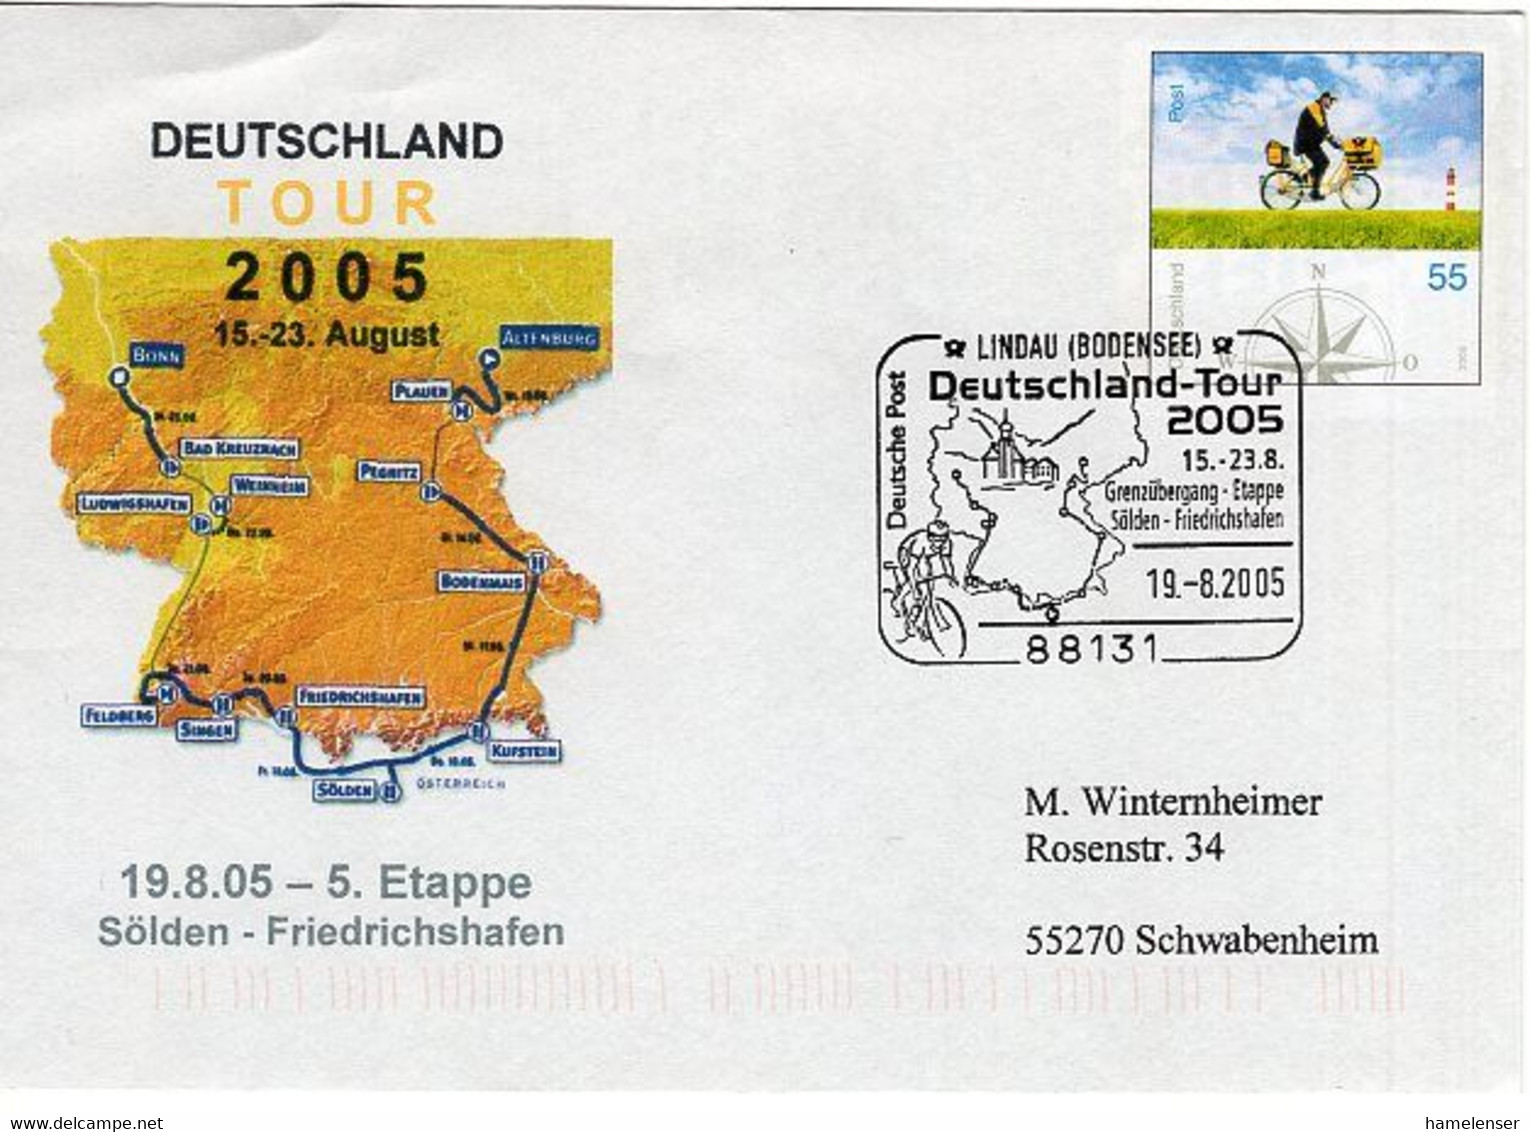 50550 - Bund - 2005 - 55c. Plusbrief "Brieftraeger" SoStpl. LINDAU - DEUTSCHLAND-TOUR 2005 -> Schwabenheim - Cycling